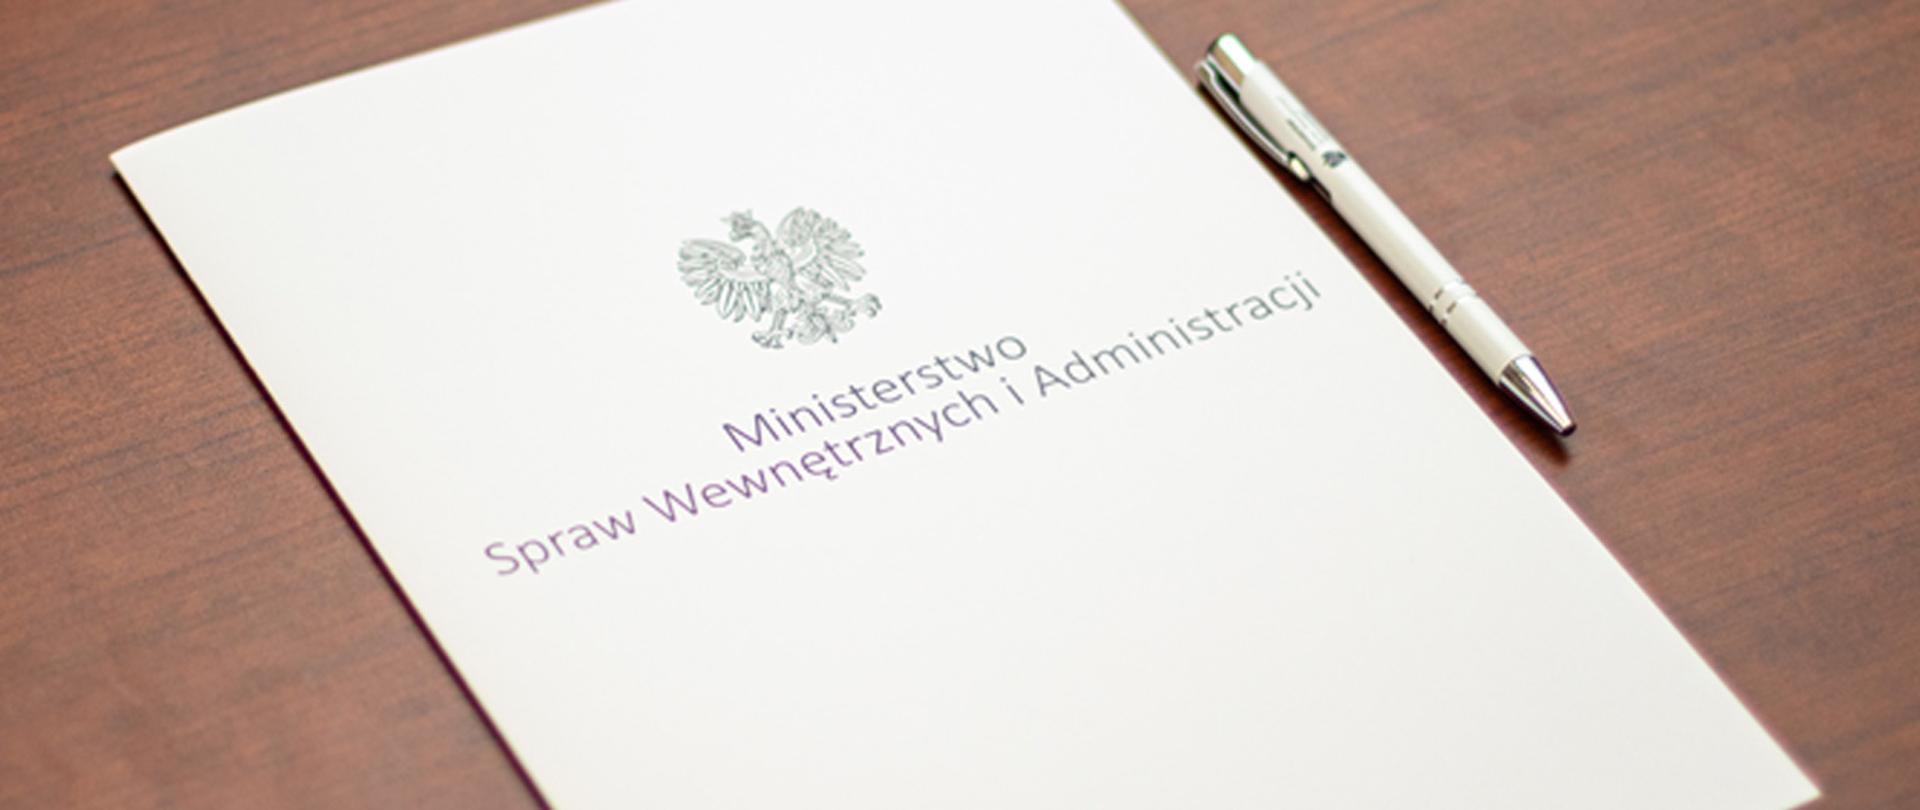 Na zdjęciu widać leżącą teczkę na dokumenty z napisem "Ministerstwo Spraw Wewnętrznych i Administracji" i orłem z godła narodowego i leżący długopis MSWiA.